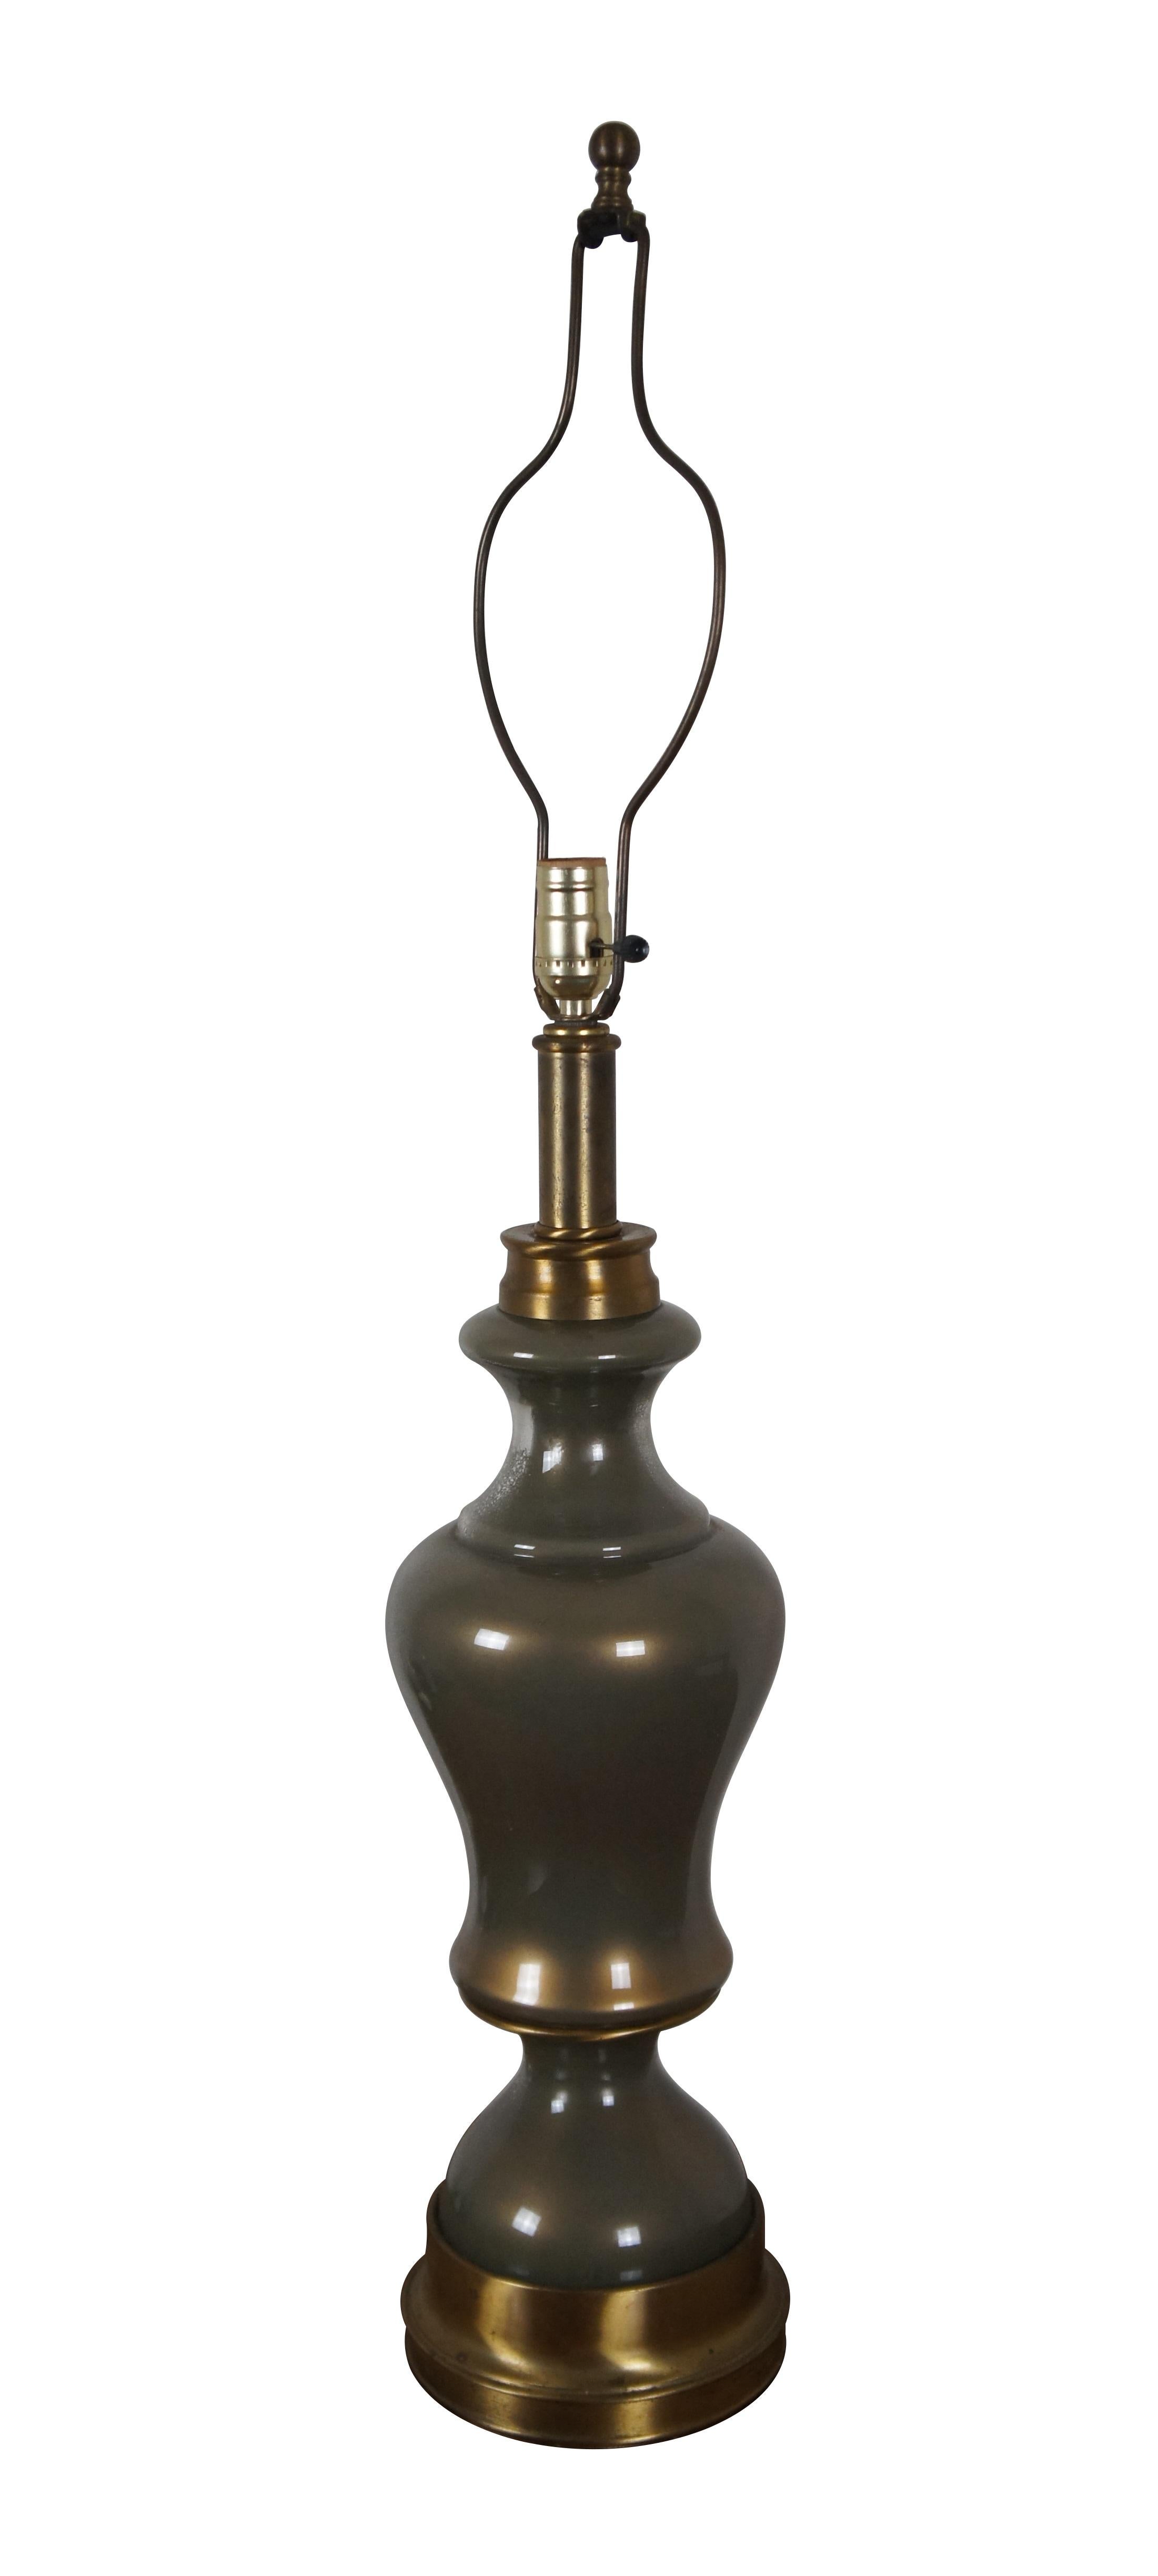 Lampe de table vintage en verre et laiton de style Hollywood Regency, de forme ronde et serpentine.

Dimensions :
7,25